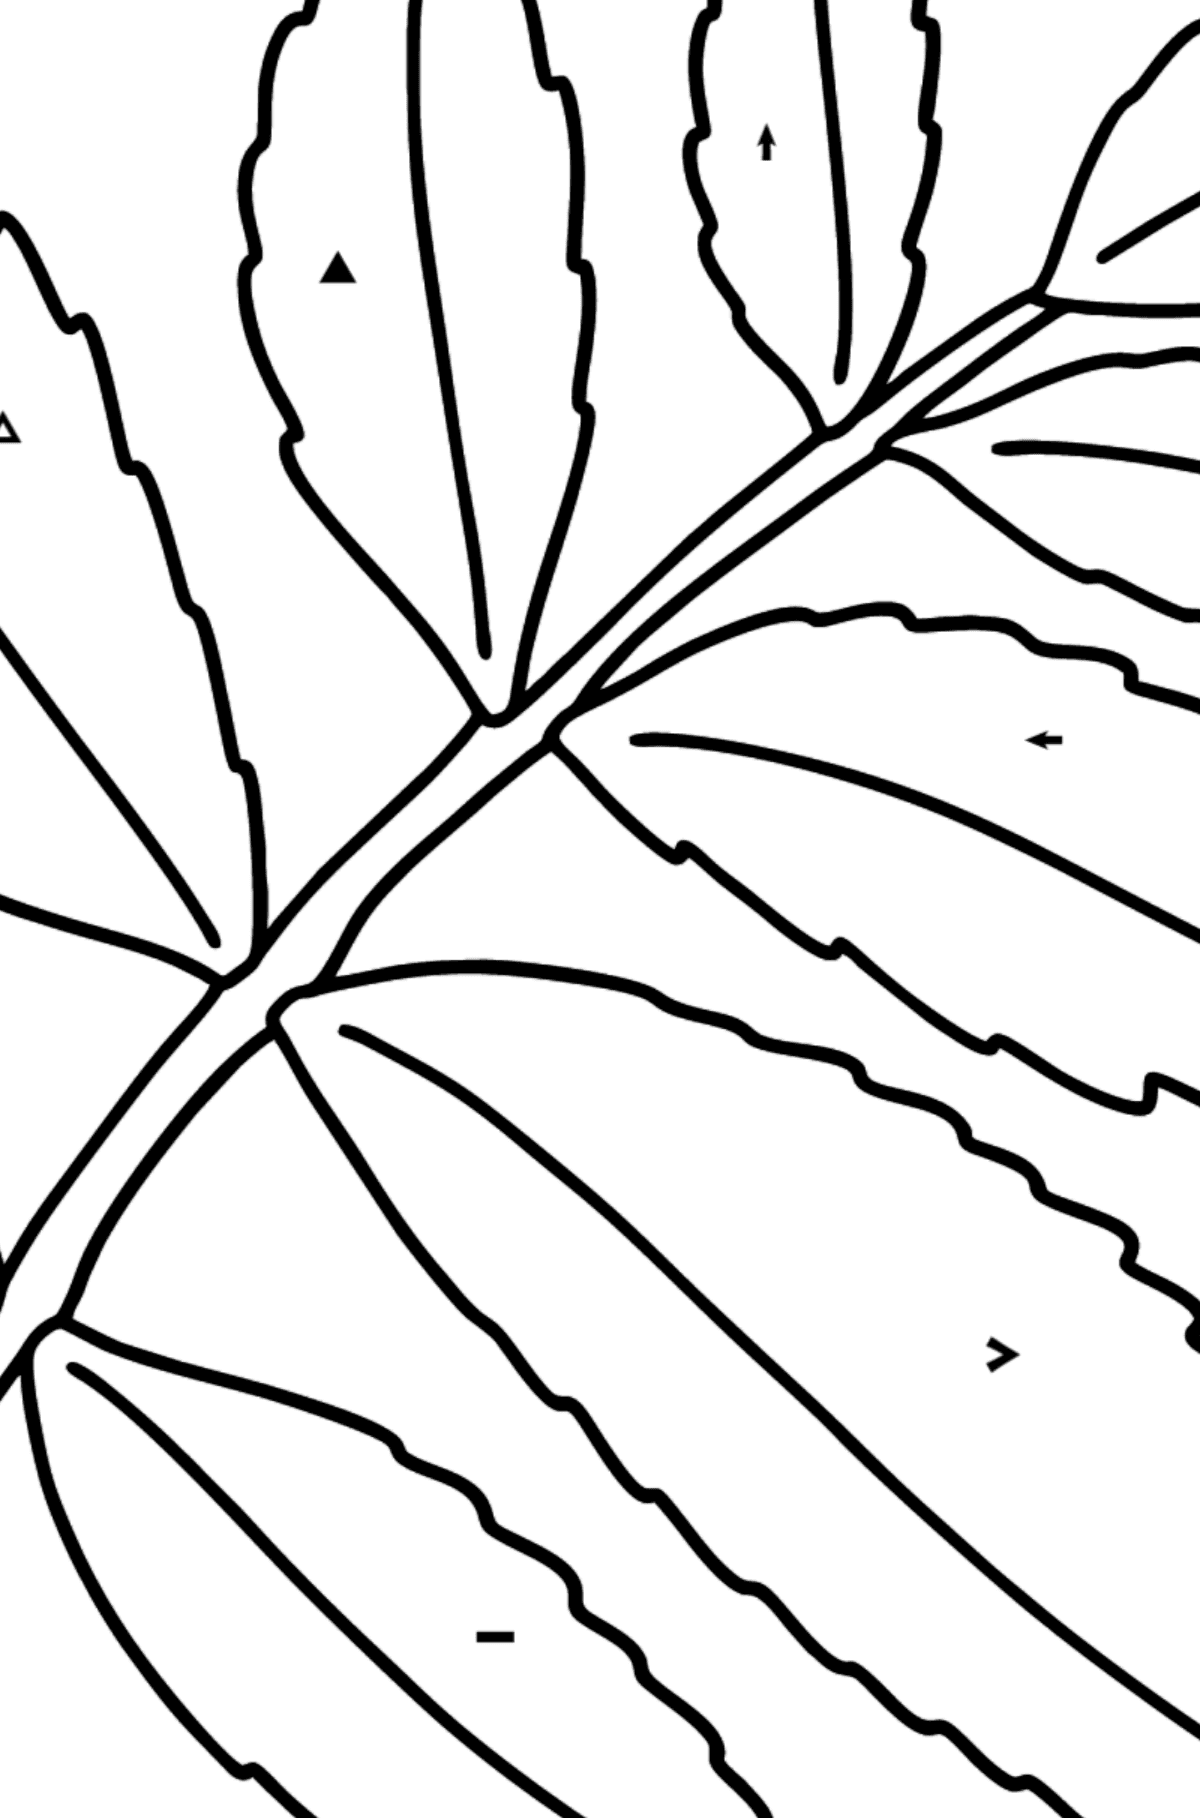 Dibujo de Hoja de árbol de Sumac para colorear - Colorear por Símbolos para Niños